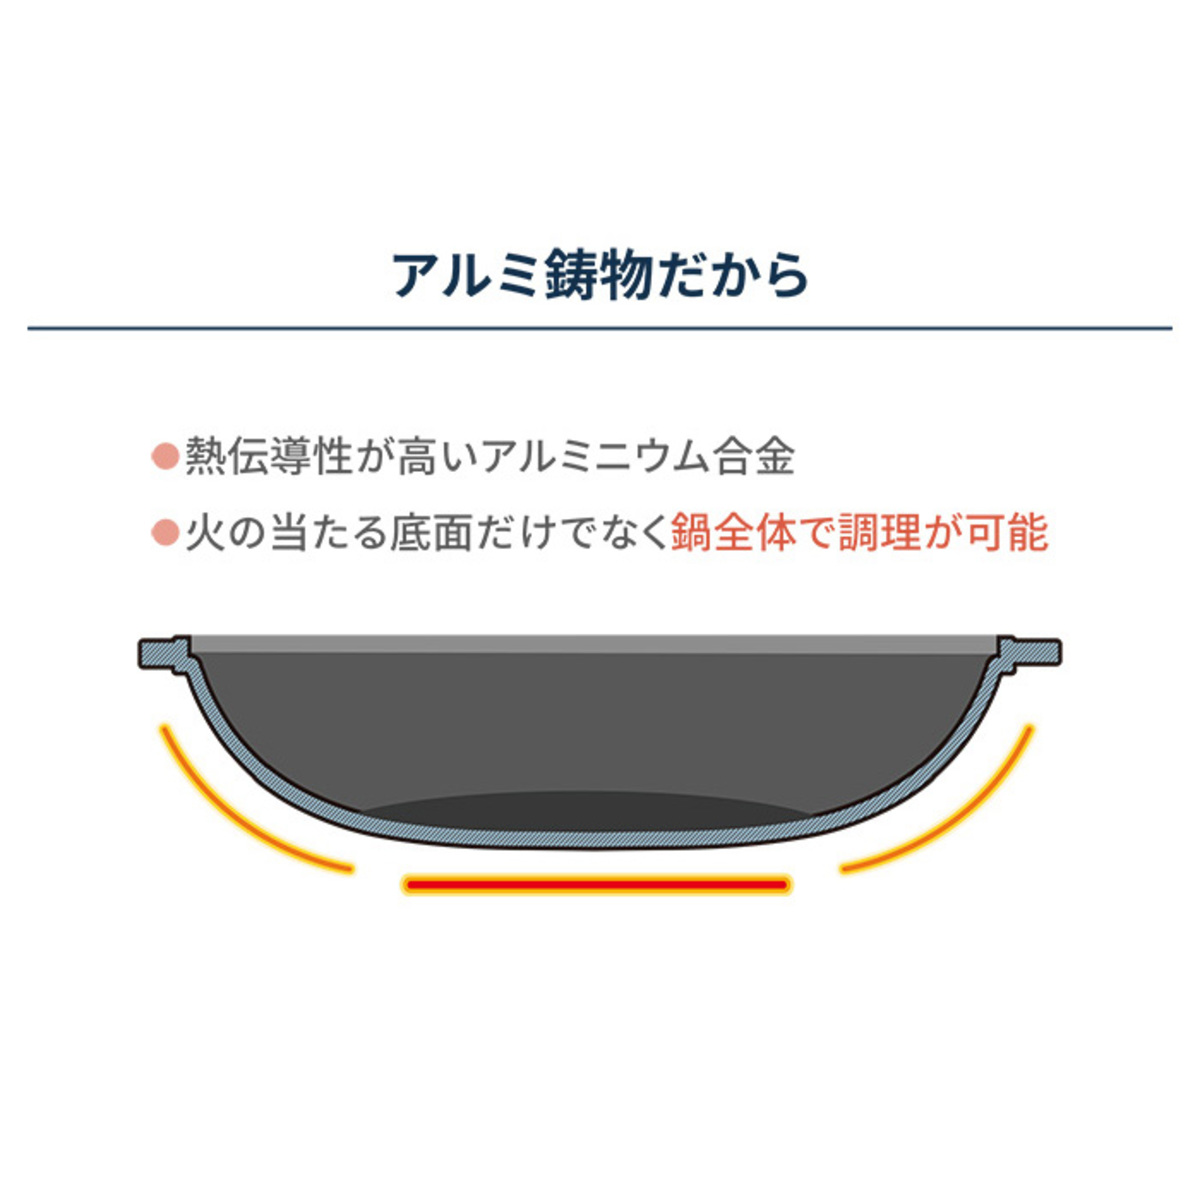 復刻 ミニまるちゃん 職人造 中華鍋型フライパン - QVC.jp